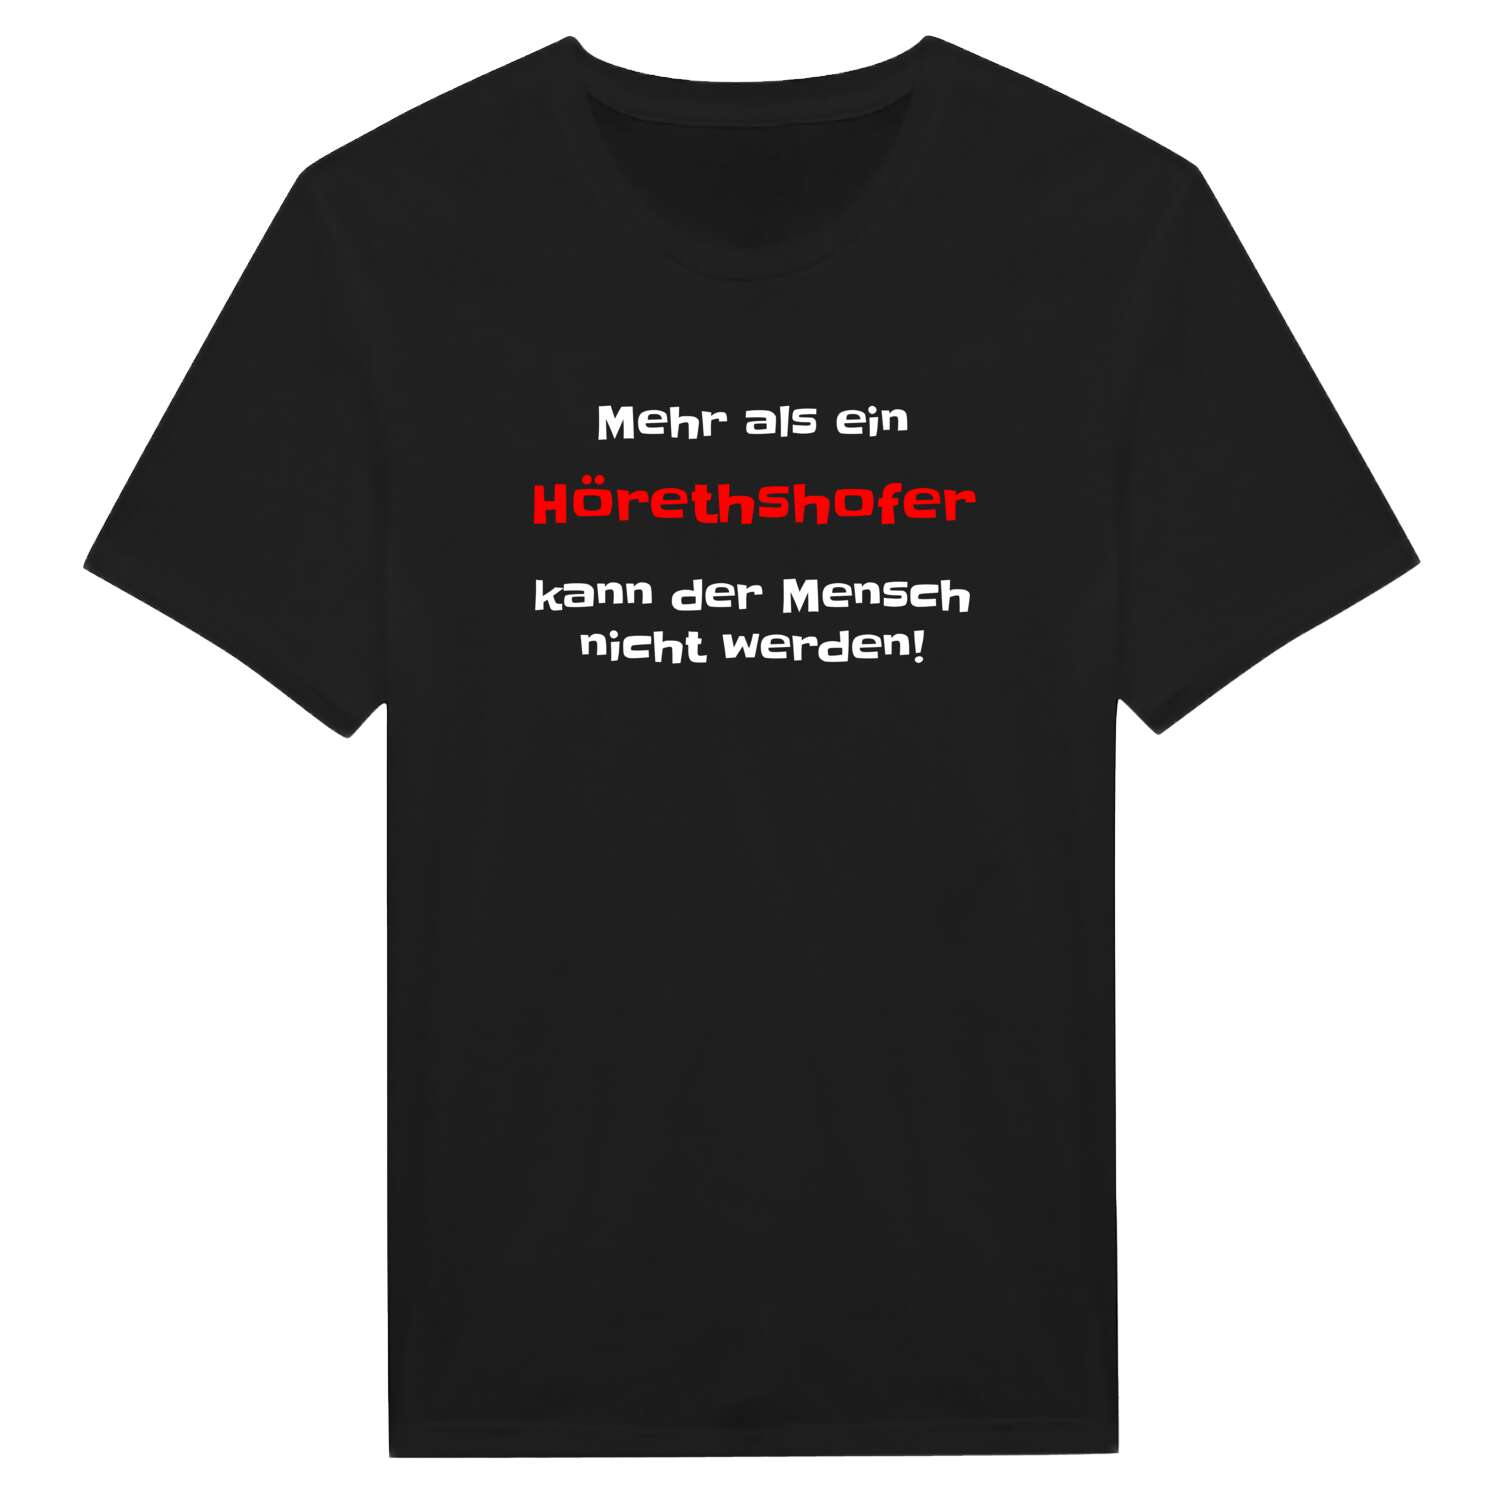 Hörethshof T-Shirt »Mehr als ein«